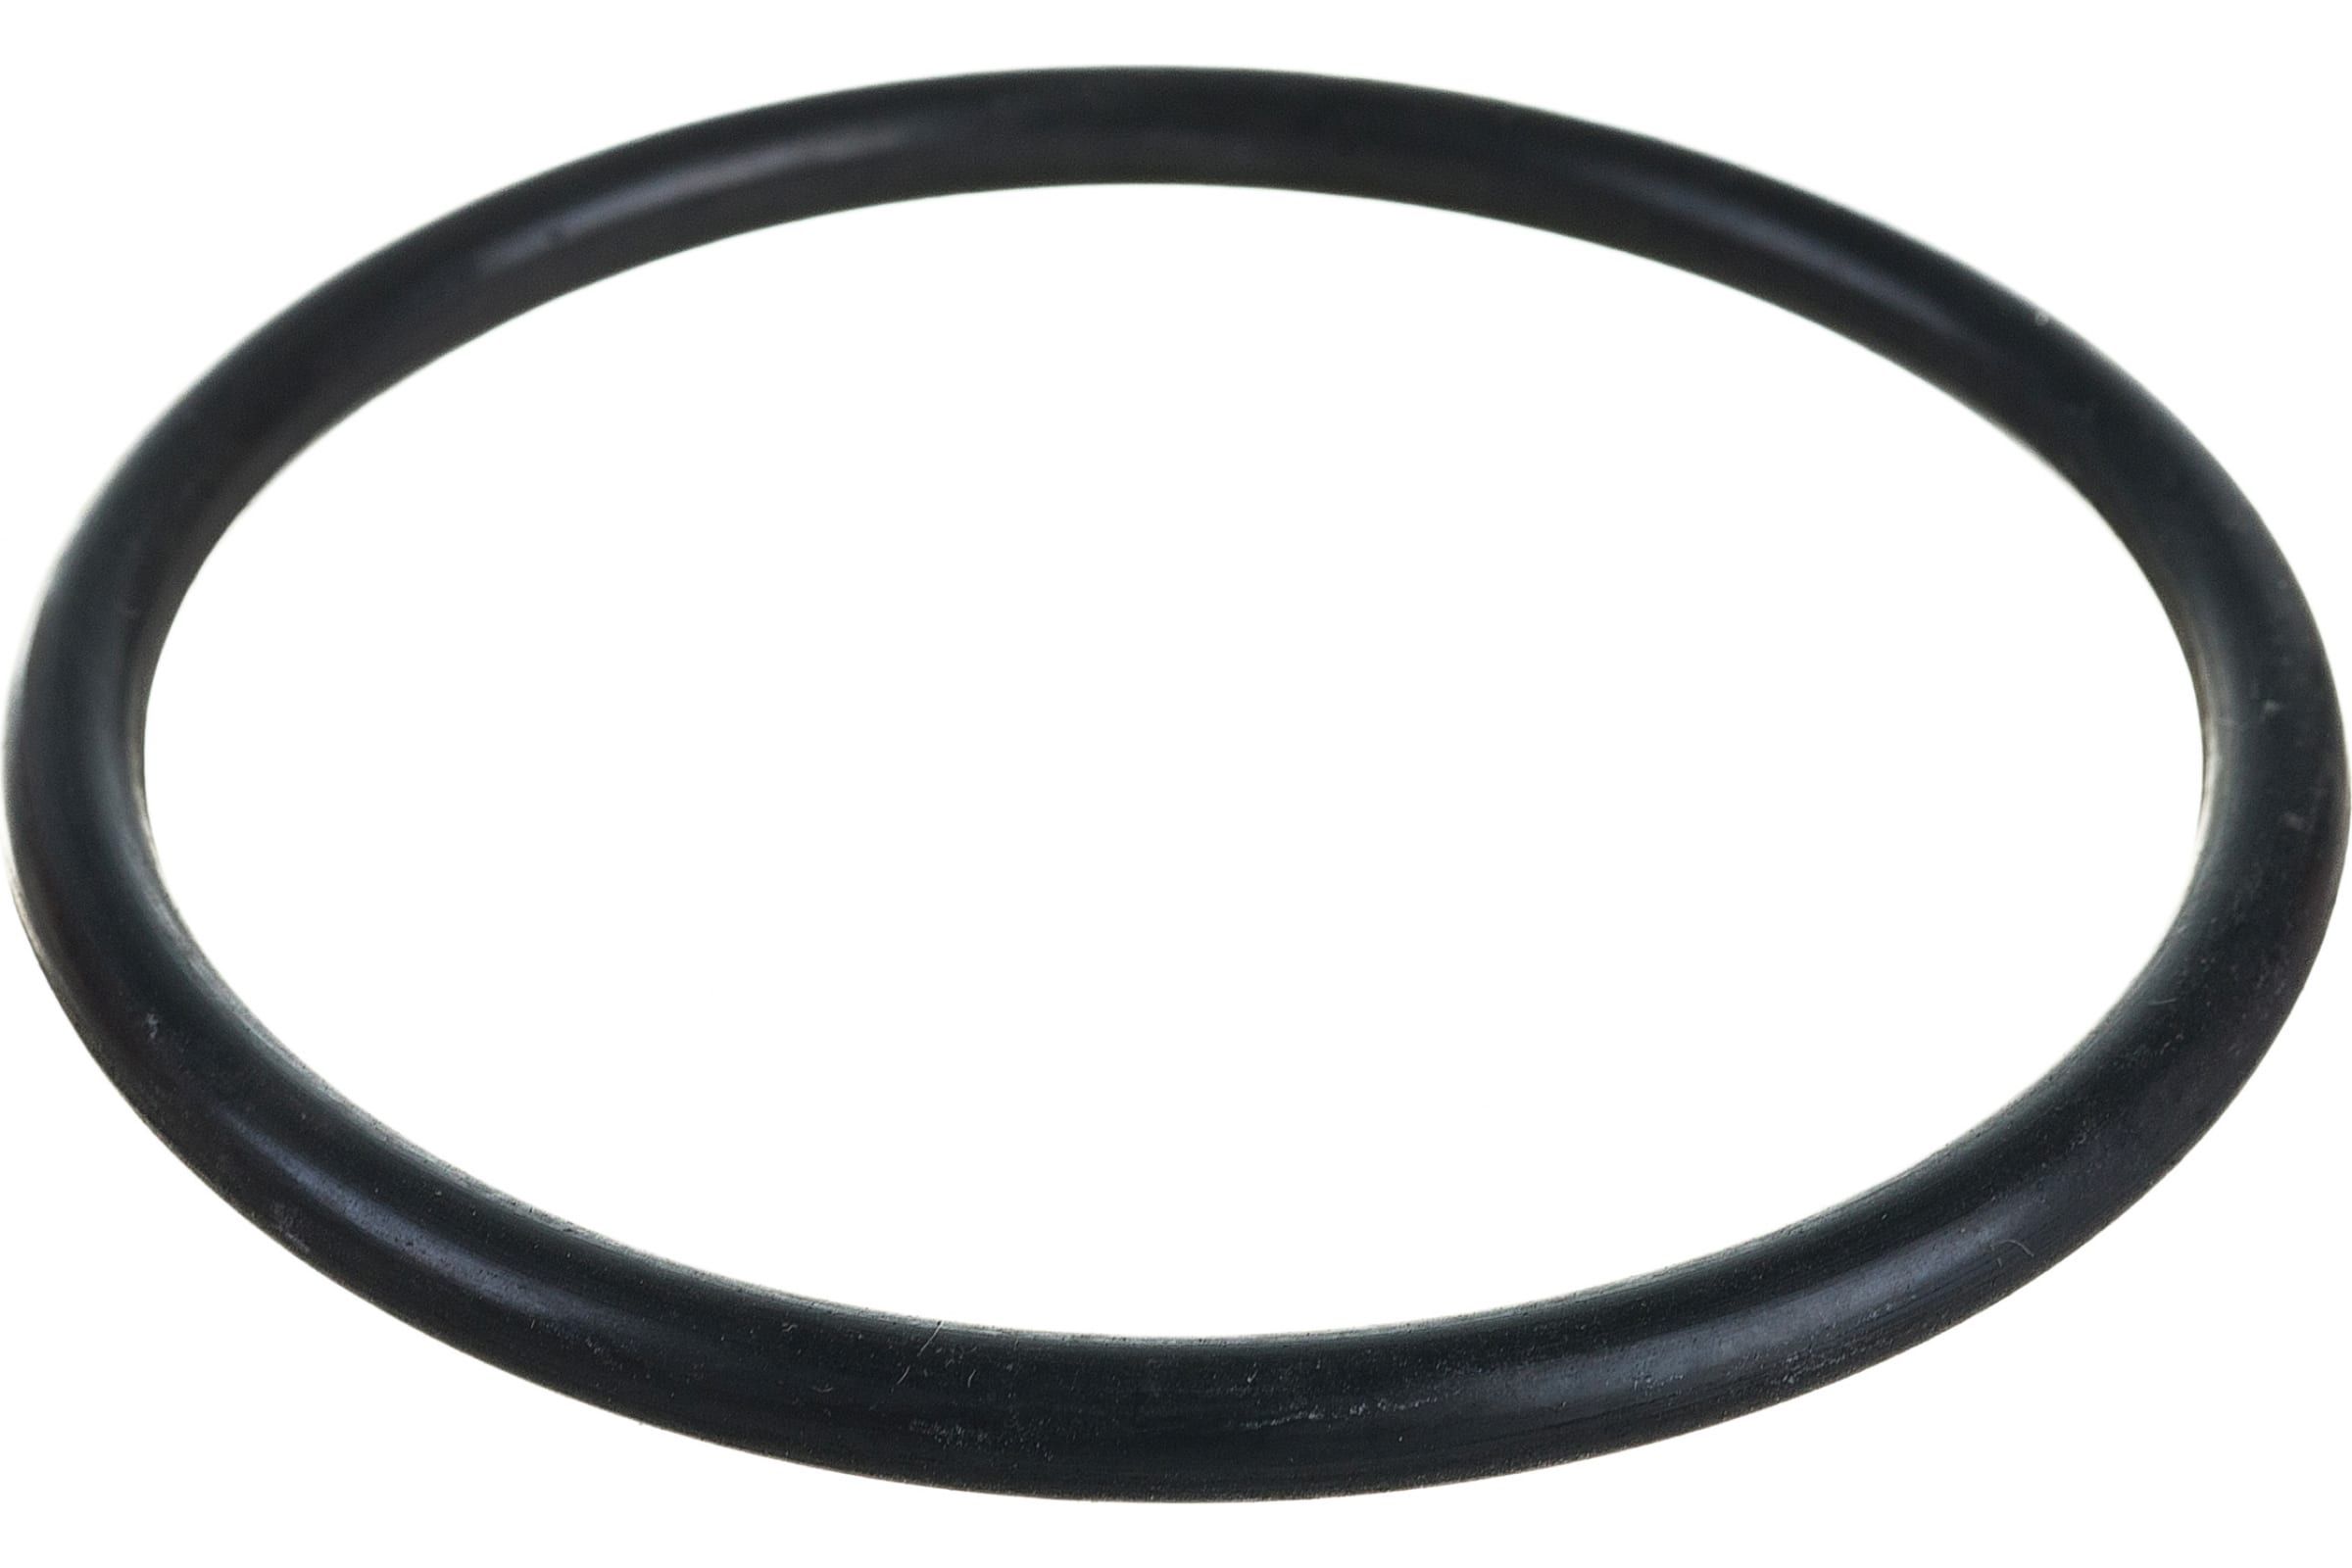 Промрукав Кольцо резиновое уплотнительное для двустенной трубы д90 1шт PR08.3158 резиновое уплотнительное кольцо для двустенной трубы промрукав